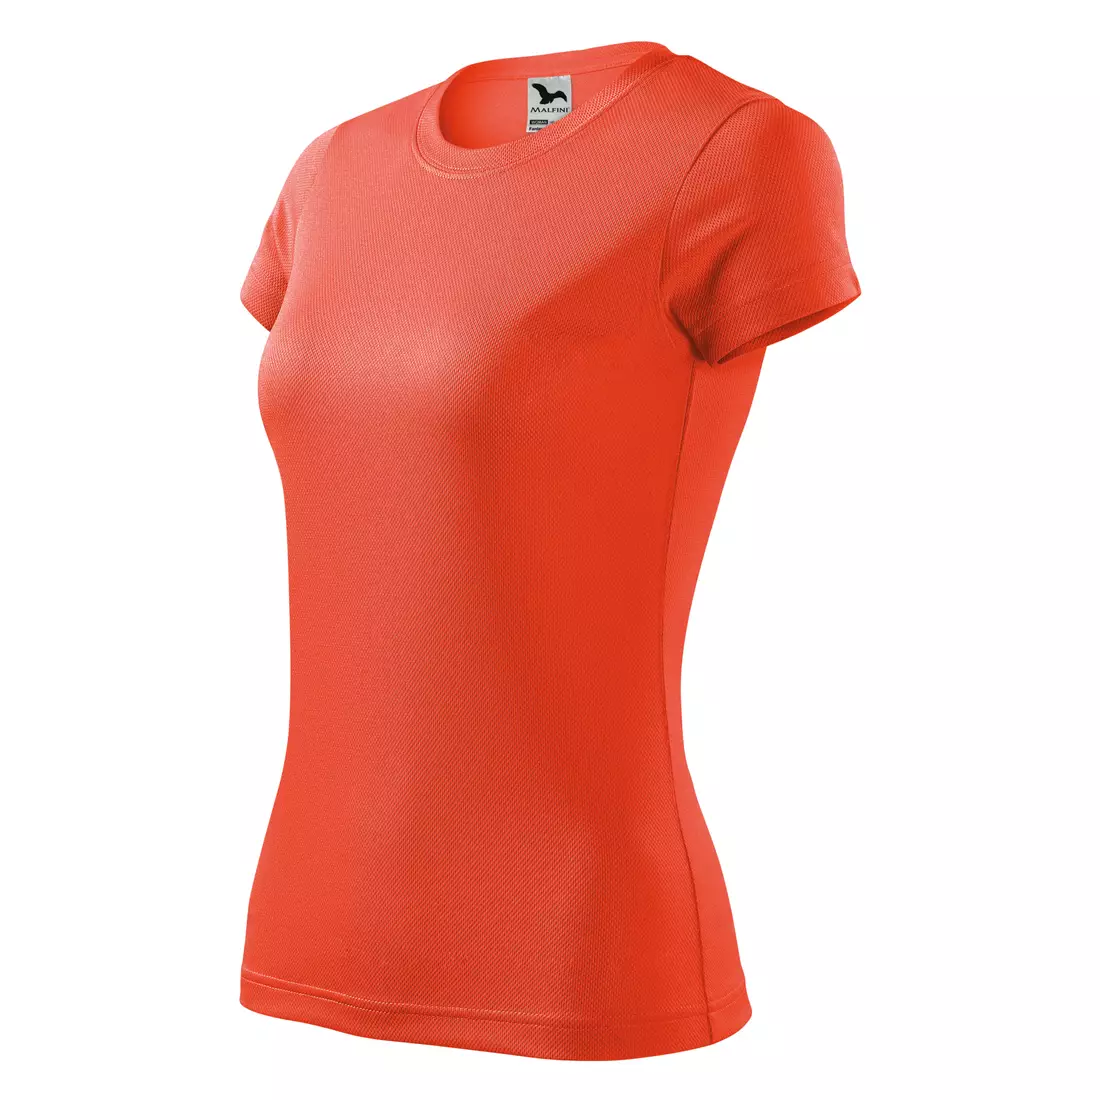 MALFINI FANTASY - Női sportpóló 100% poliészter, neon narancssárga 1409112-140